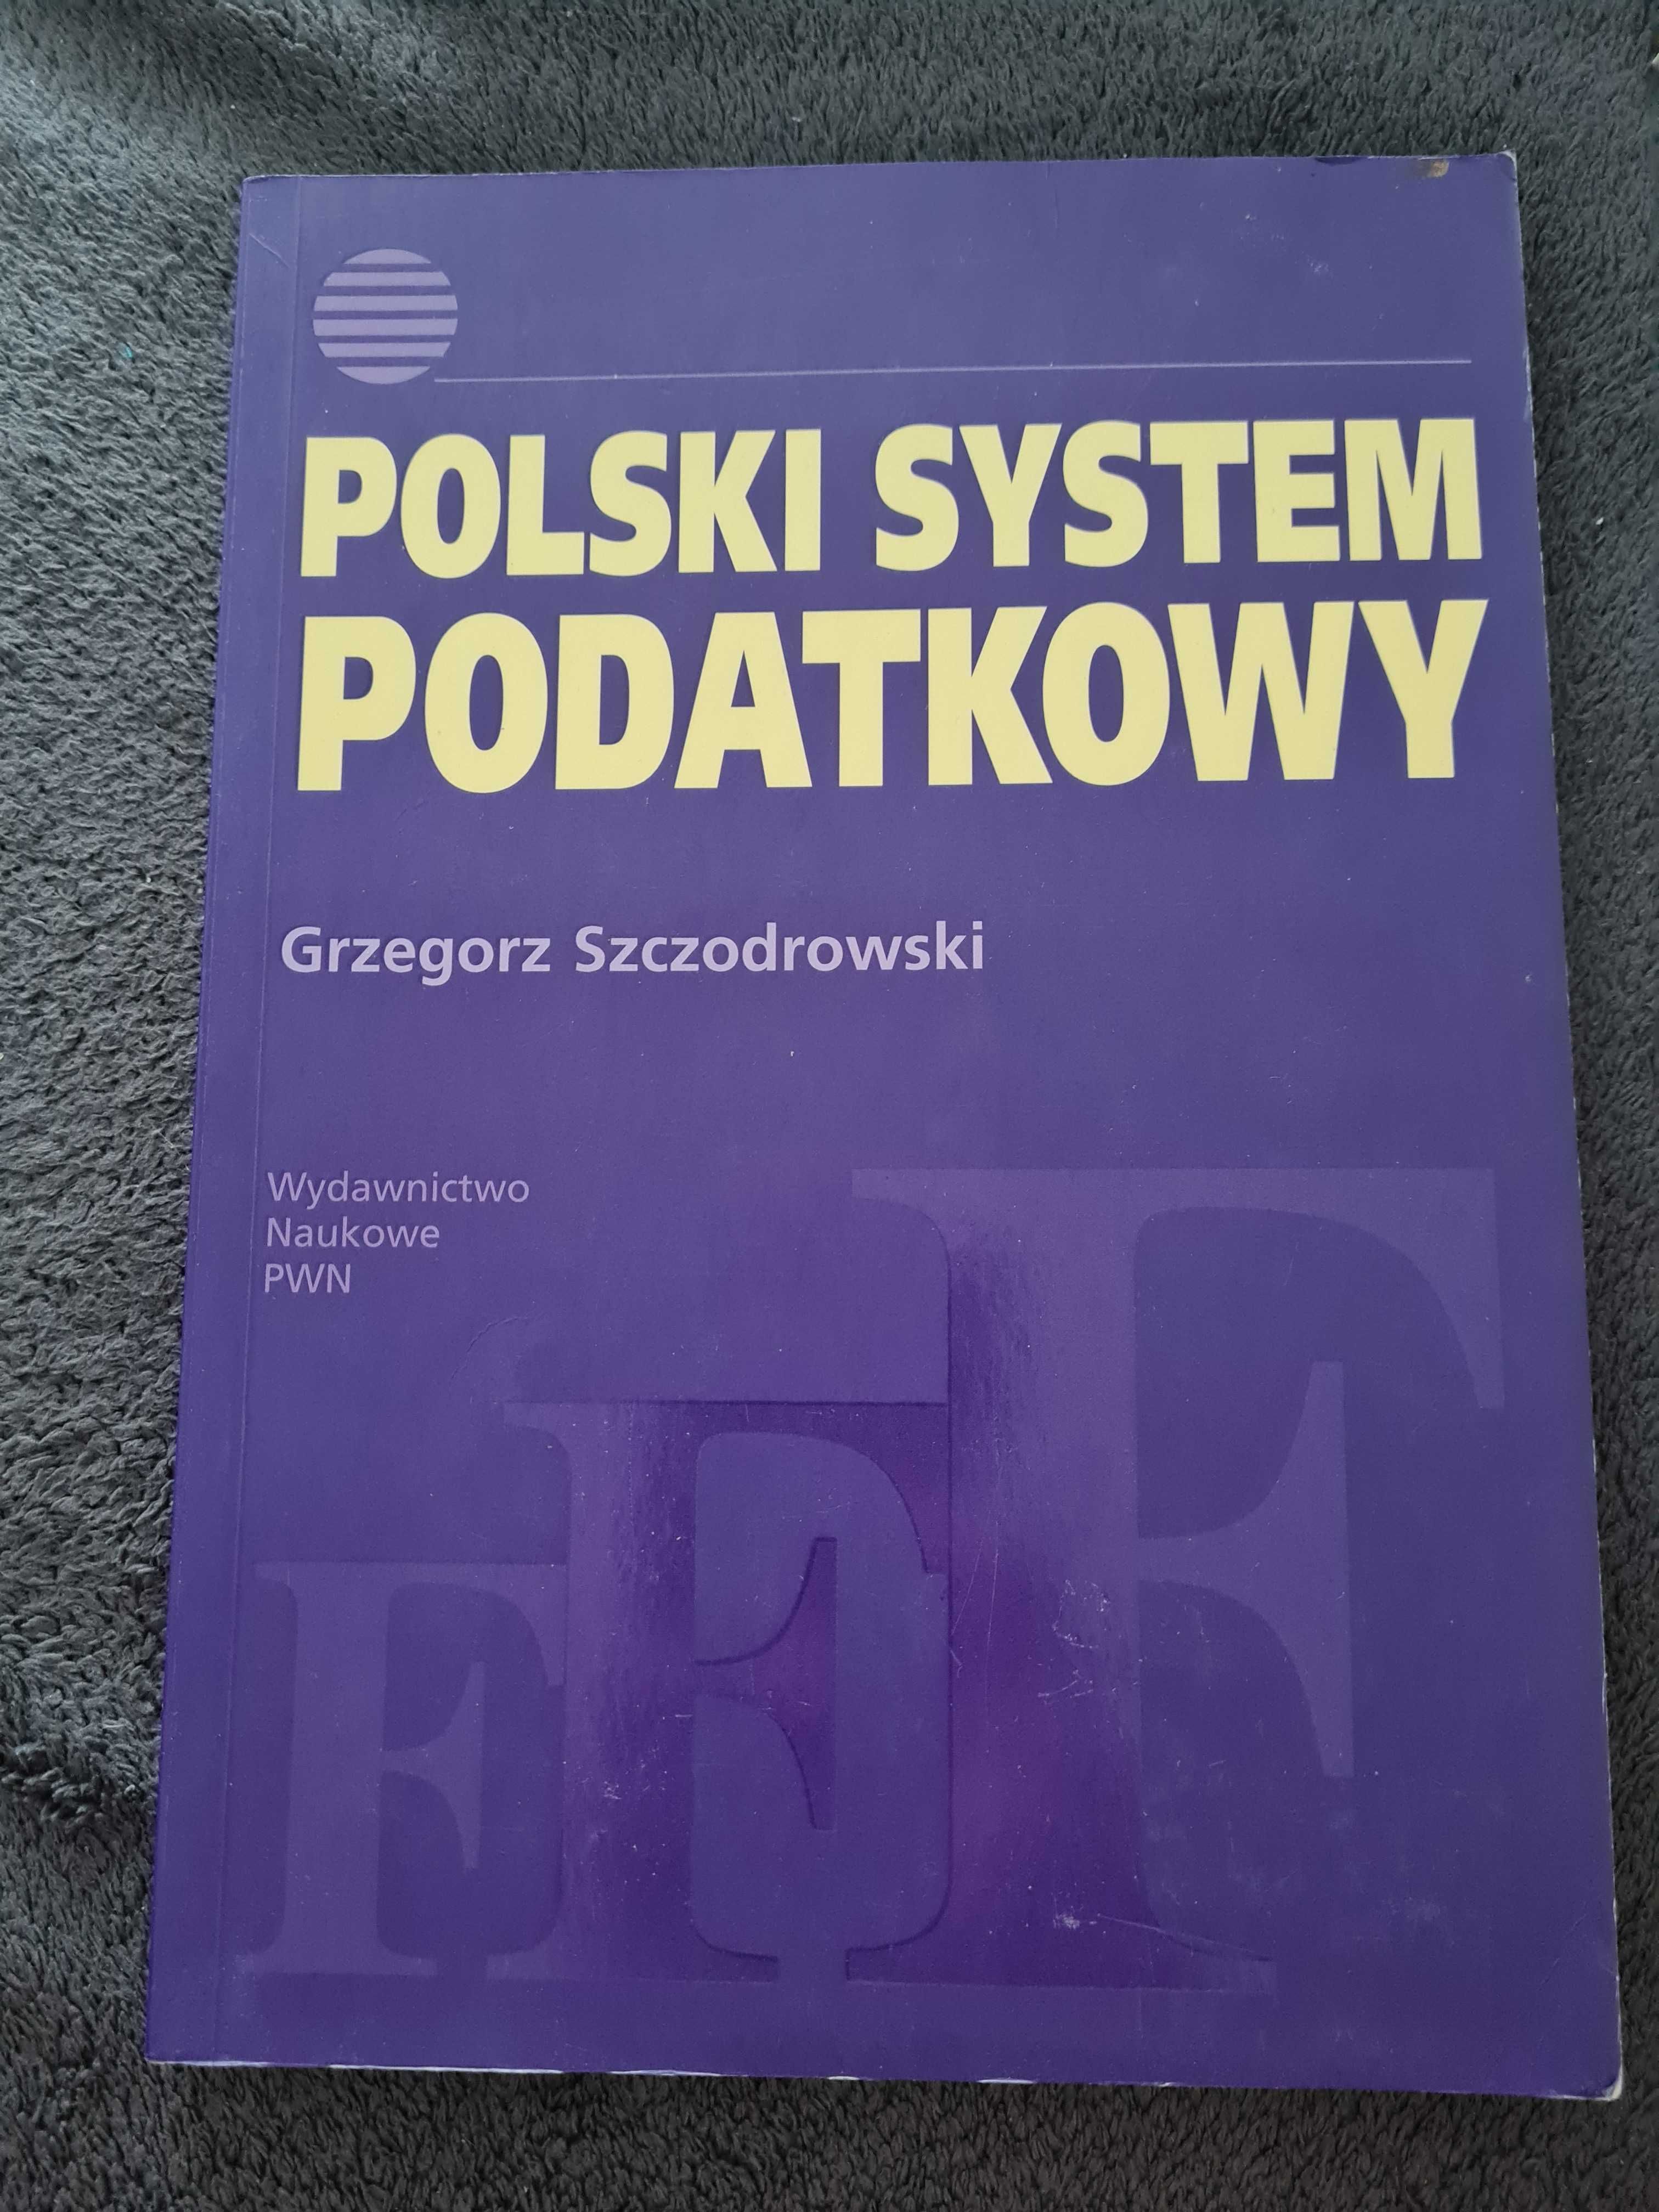 Polski system podatkowy Szczodrowski